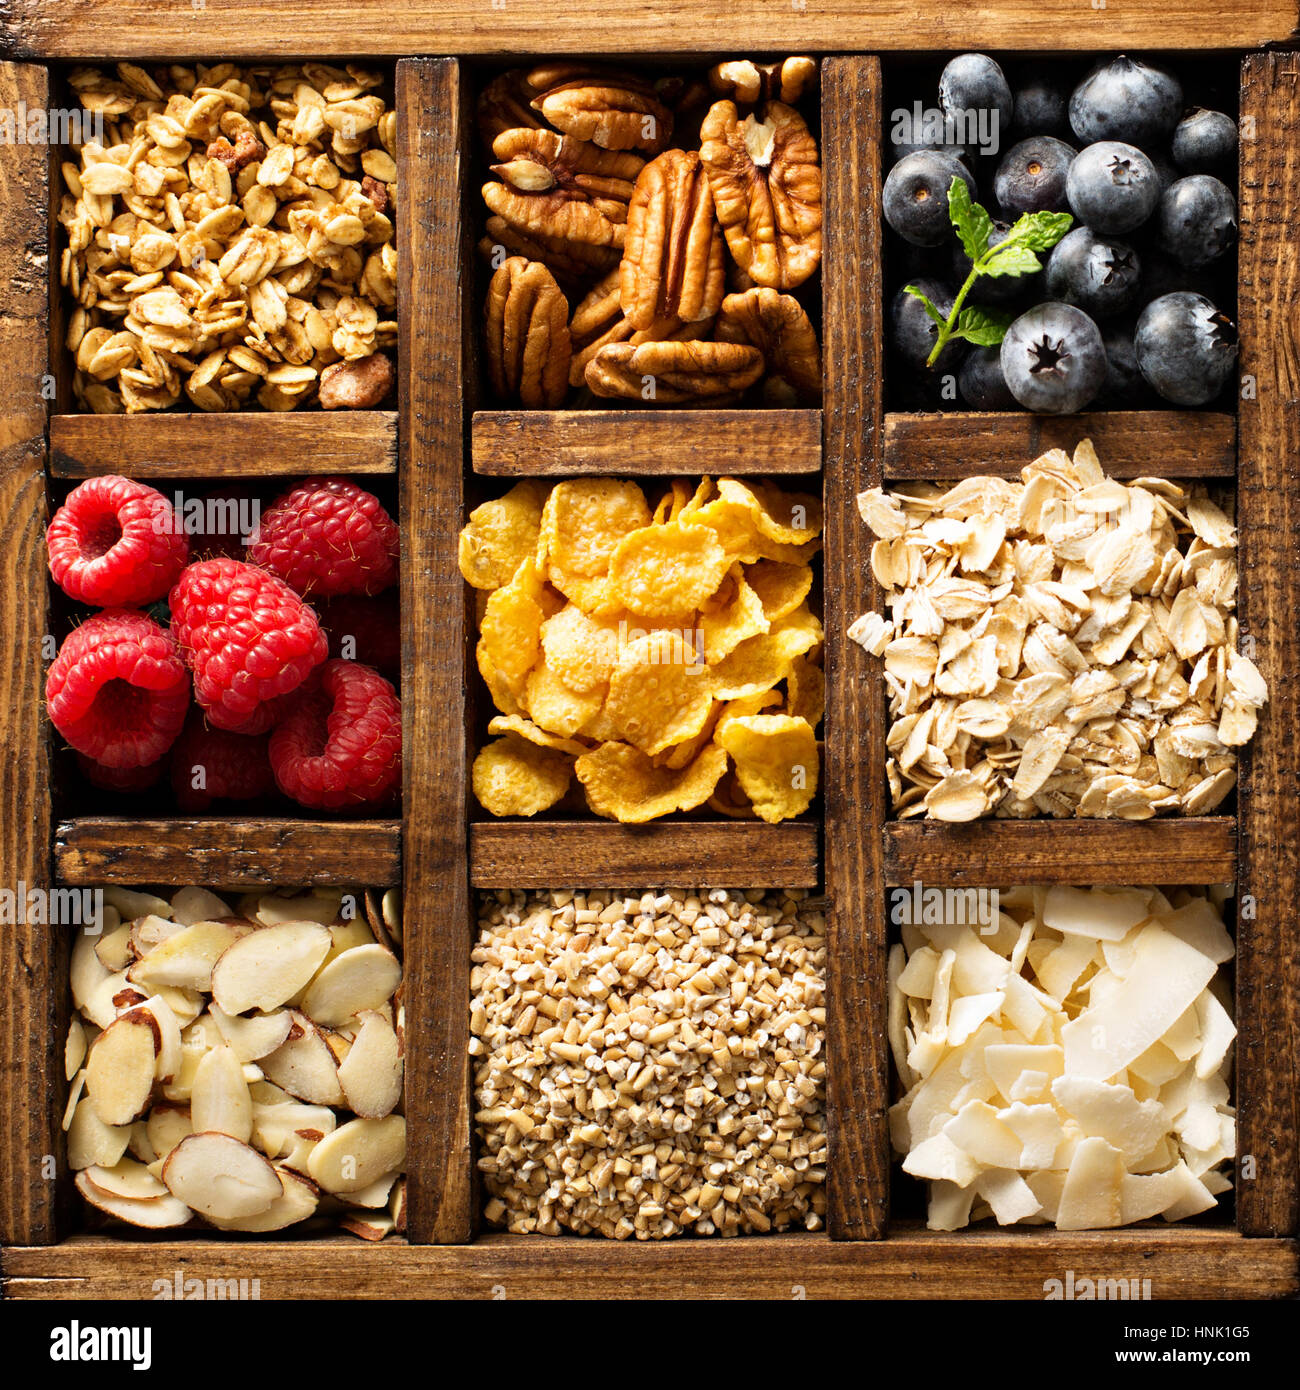 Colazione alimenti, avena, cereali e frutta in una scatola di legno overhead shot Foto Stock